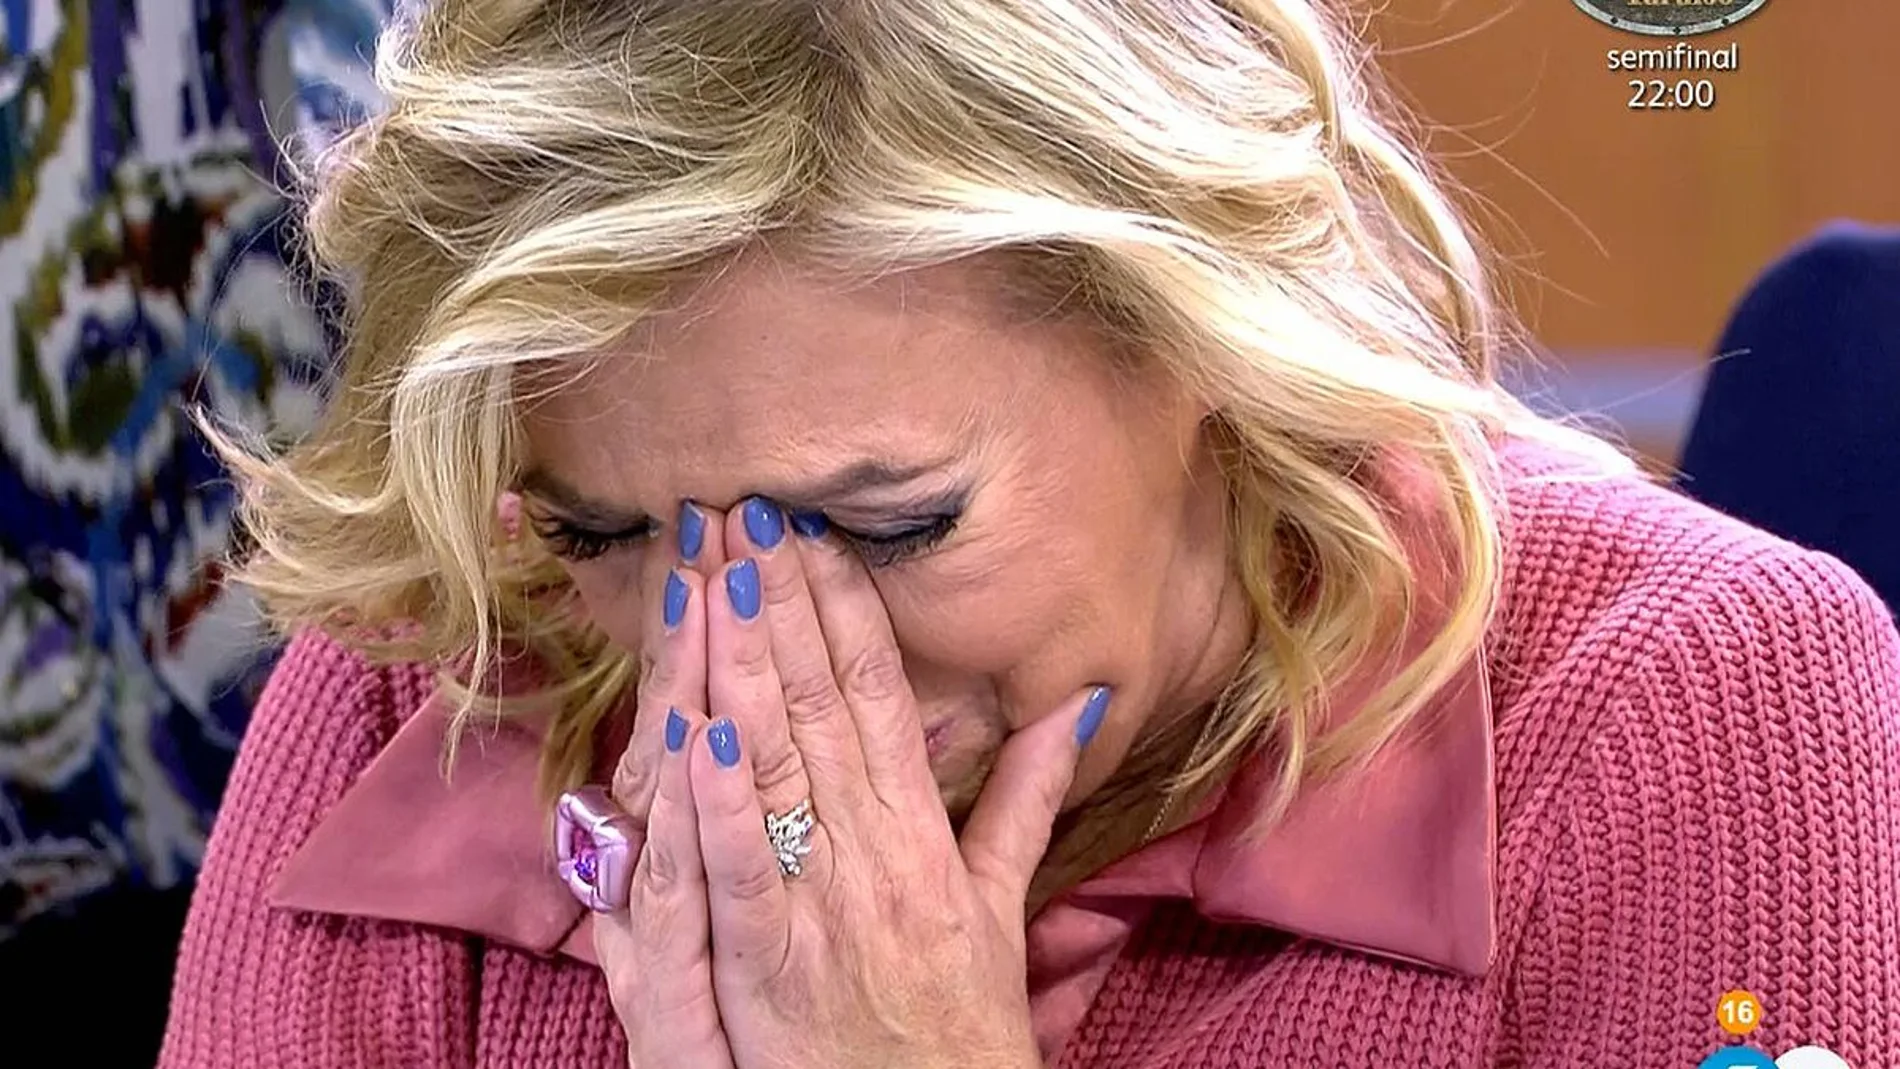 Carmen Borrego llorando en "Sálvame"